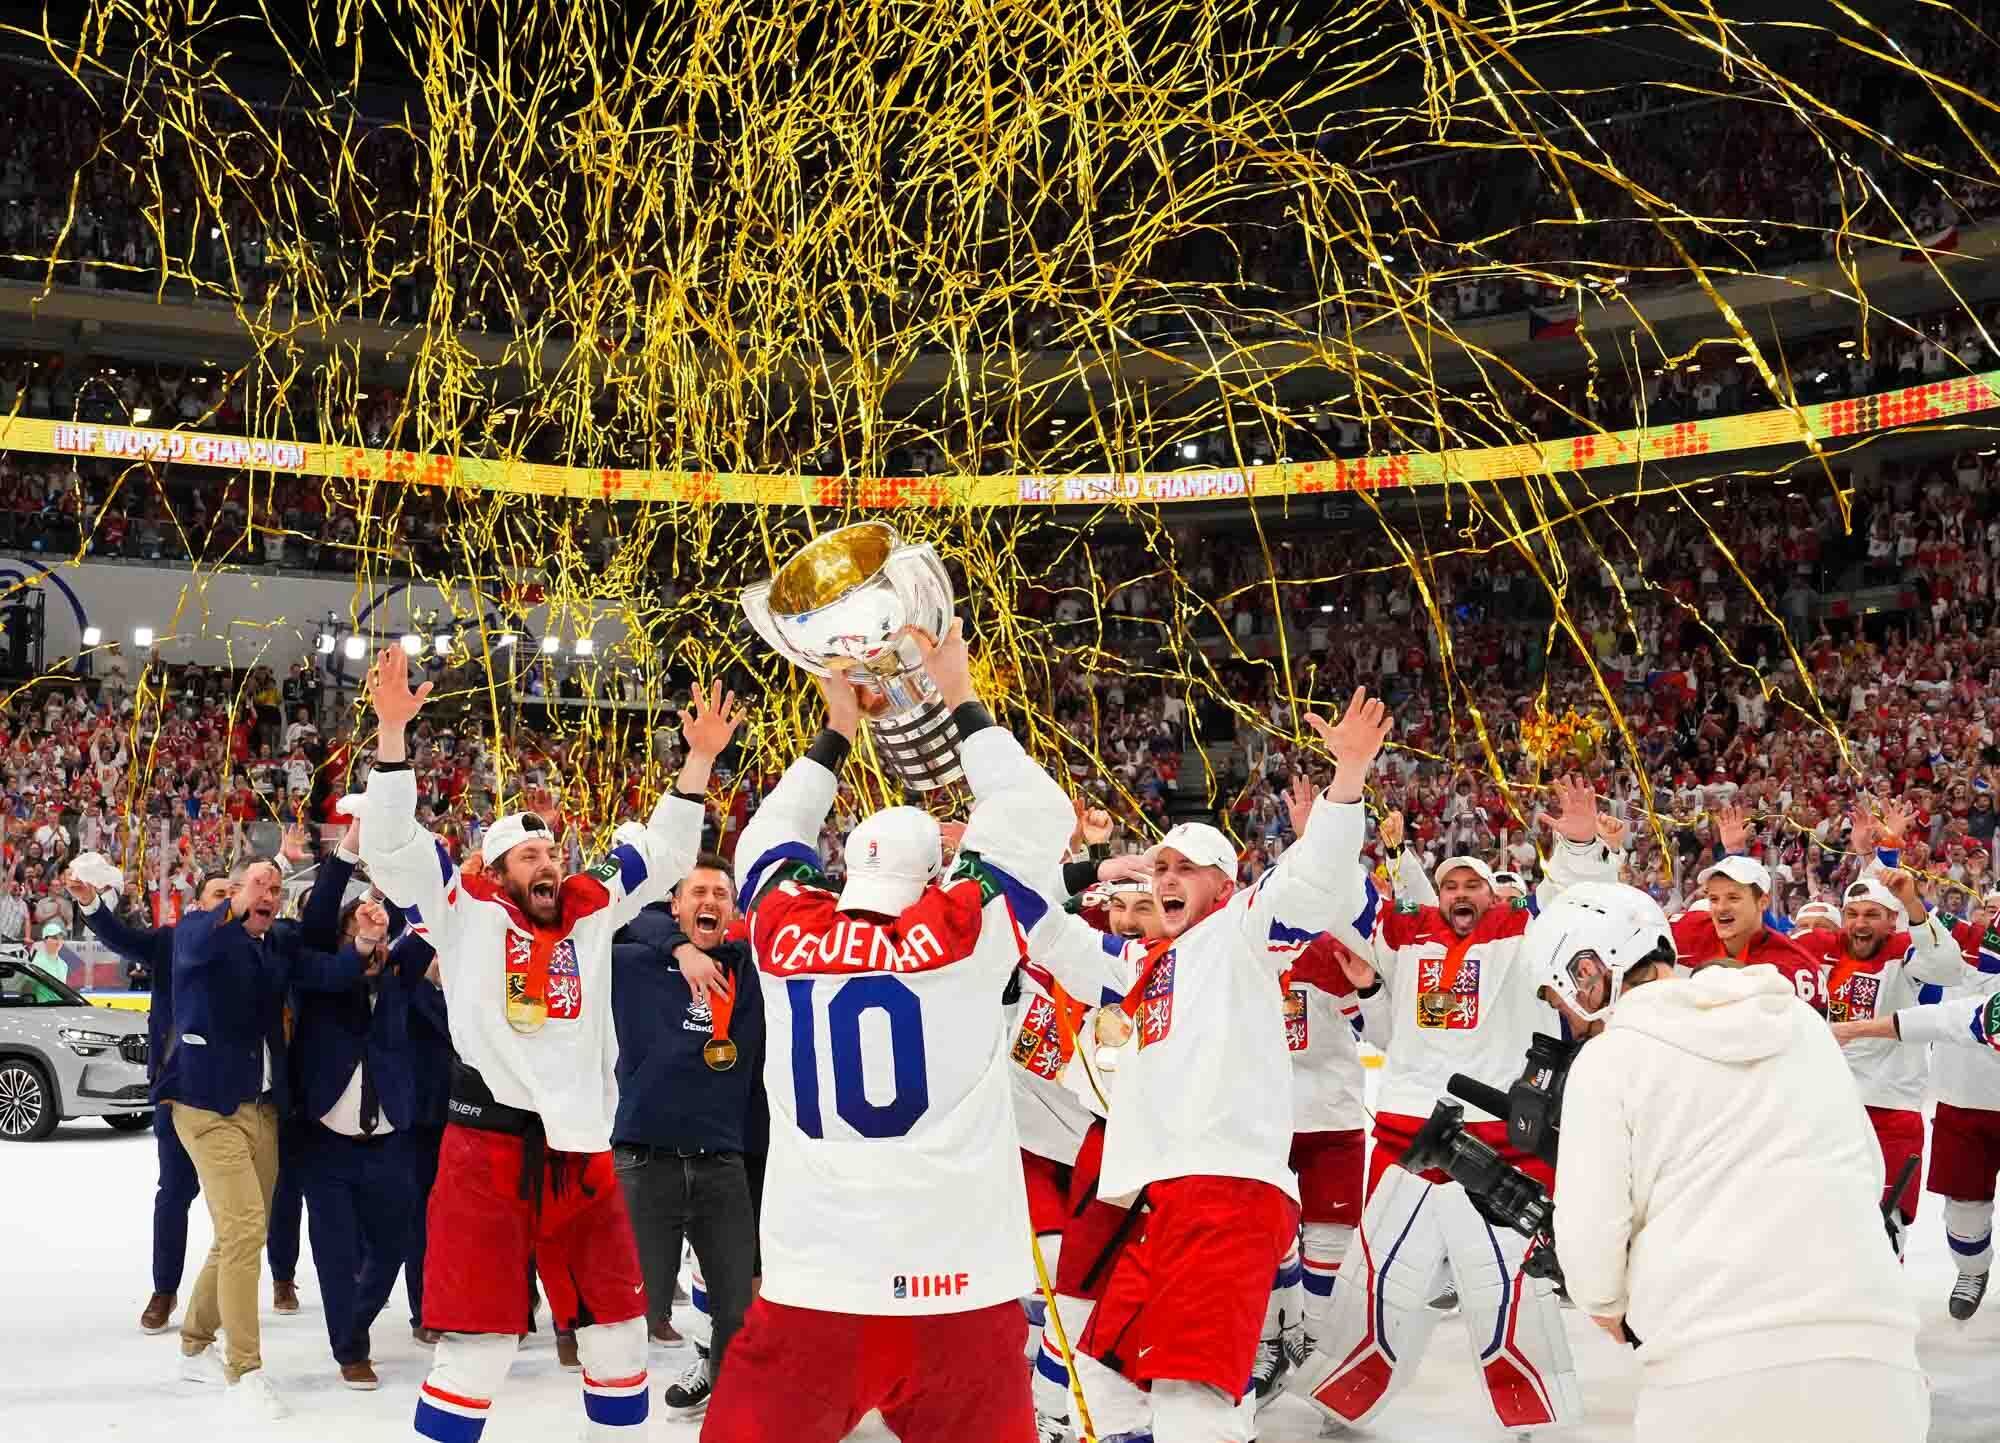 "Верх цинізму!" В РФ обурилися, що Чехія обійшла Росію за кількістю медалей ЧС з хокею